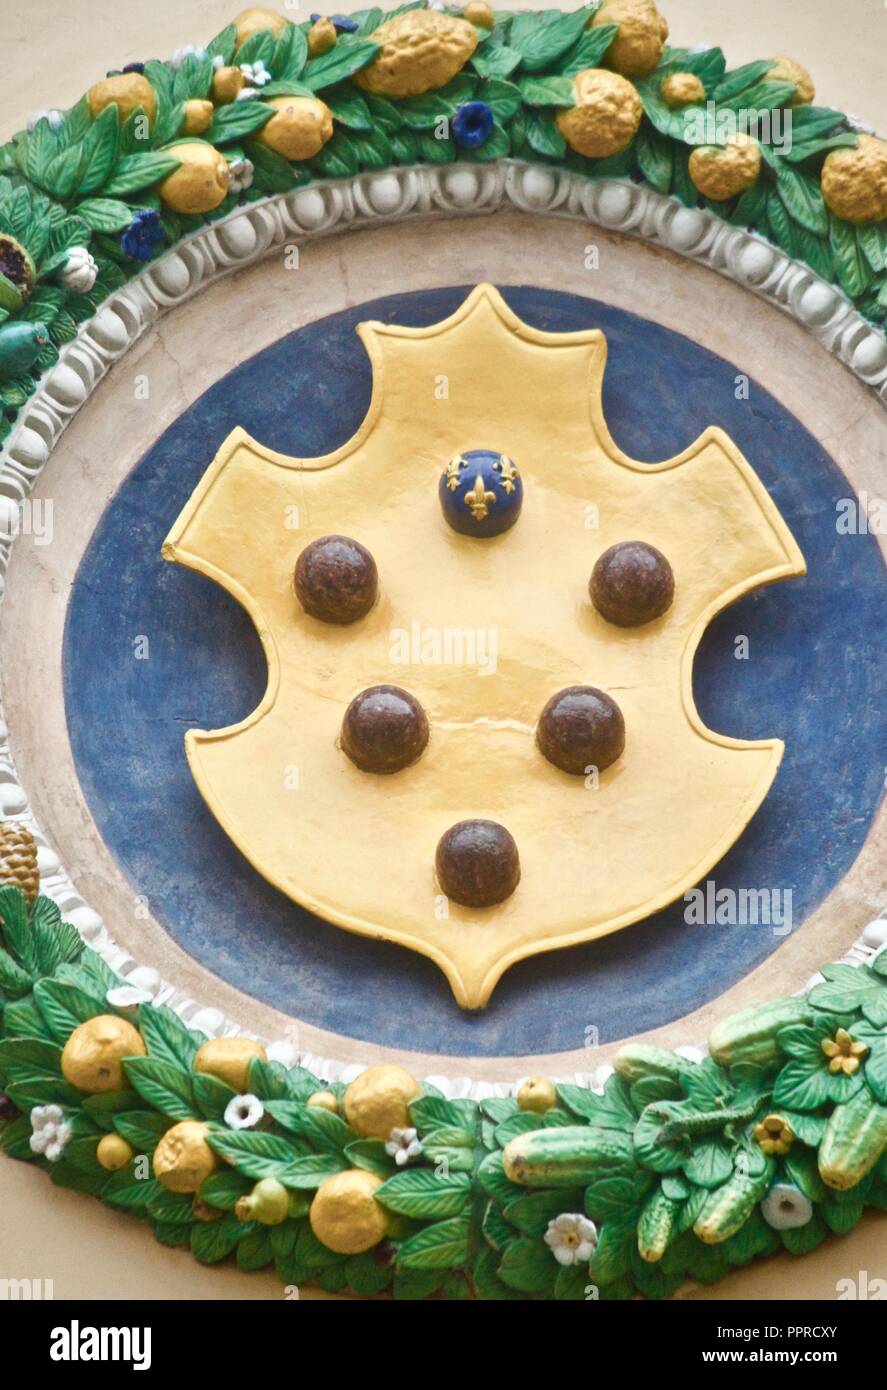 Medici emblème familial avec des boules avec châssis rond typique Banque D'Images